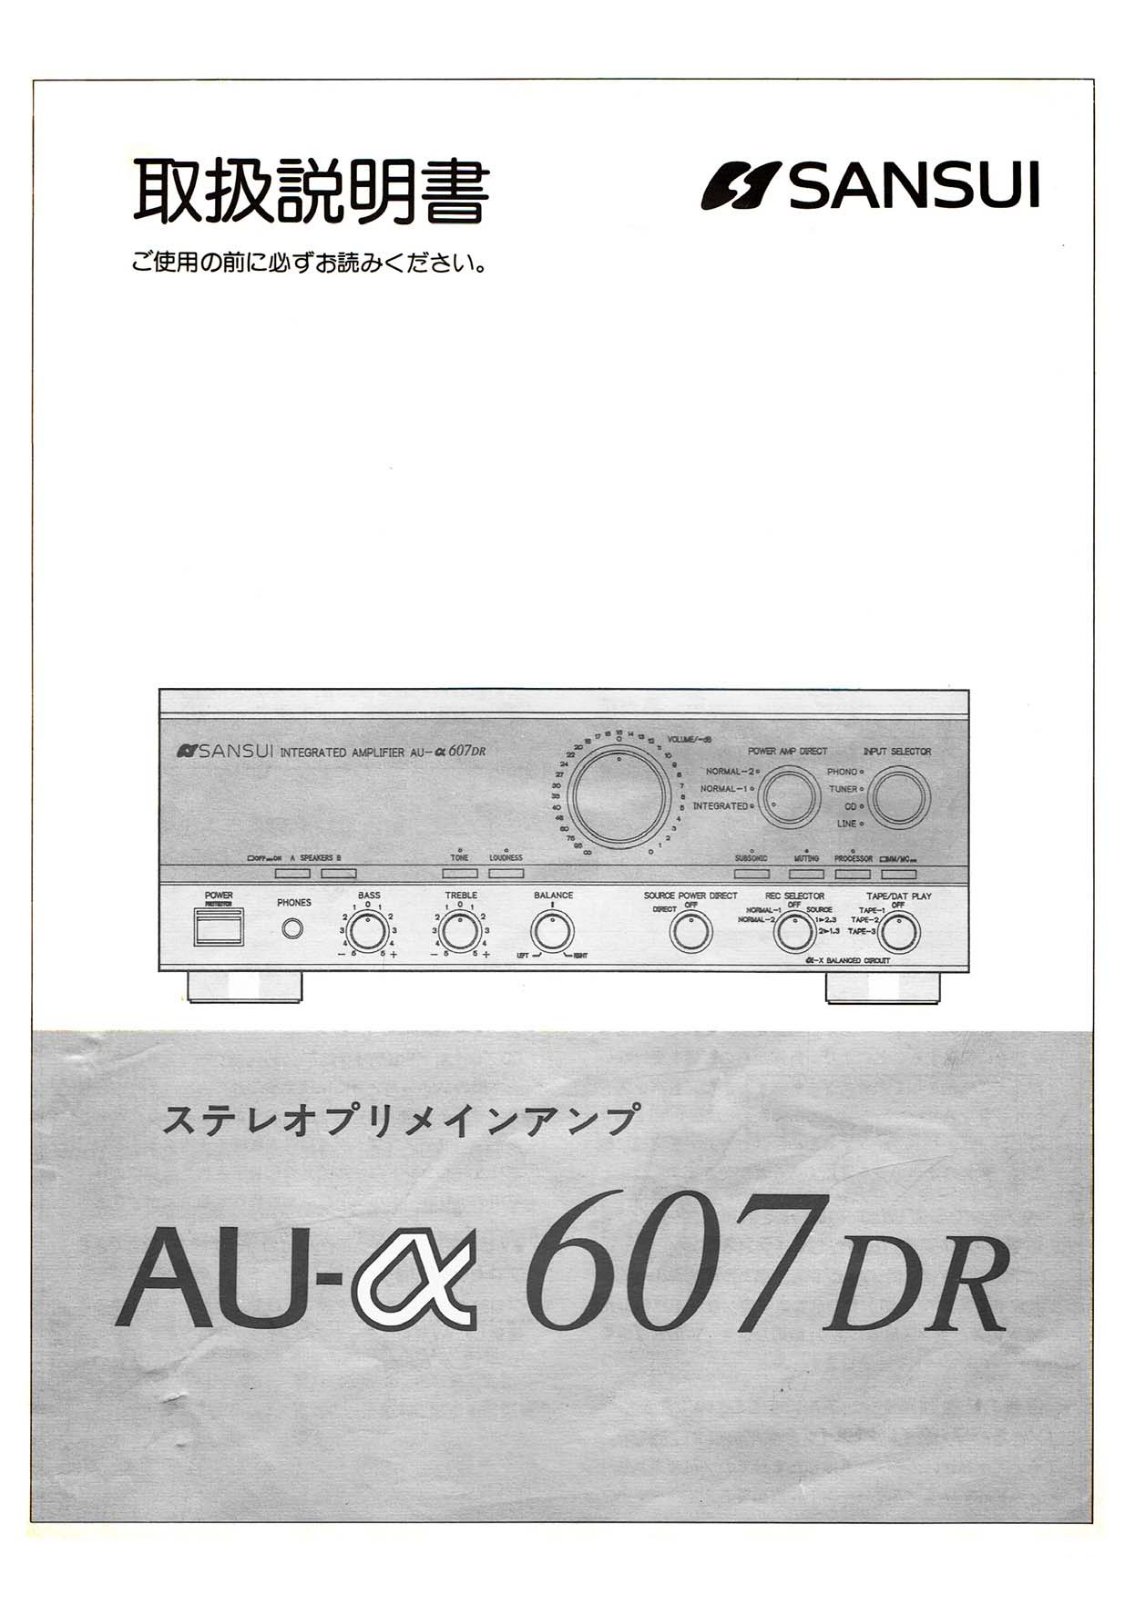 Sansui AU-a607-DR Owners Manual